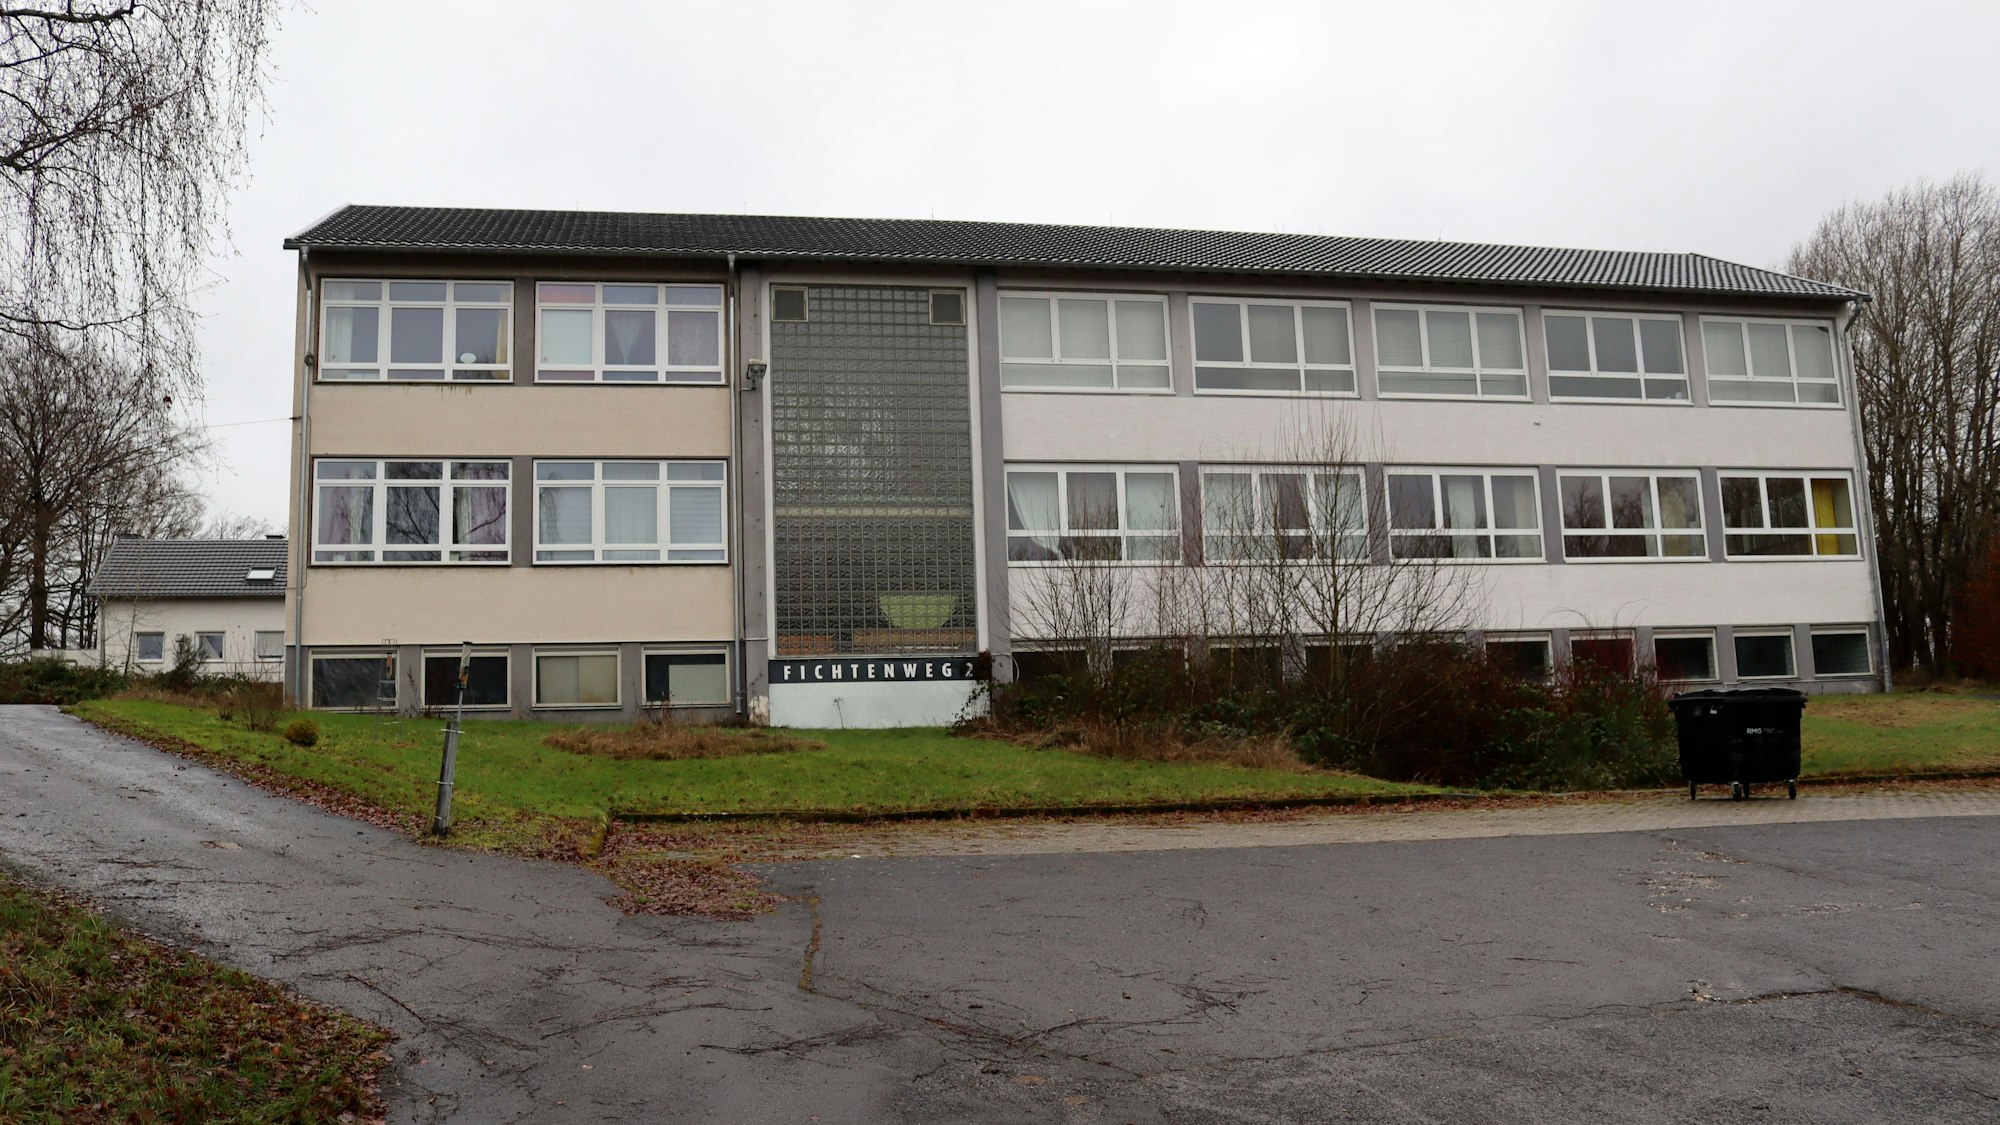 Die ehemalige Grundschule in Nitterscheid soll nach dem Willen der Stadt Flüchtlingsunterkunft bleiben.